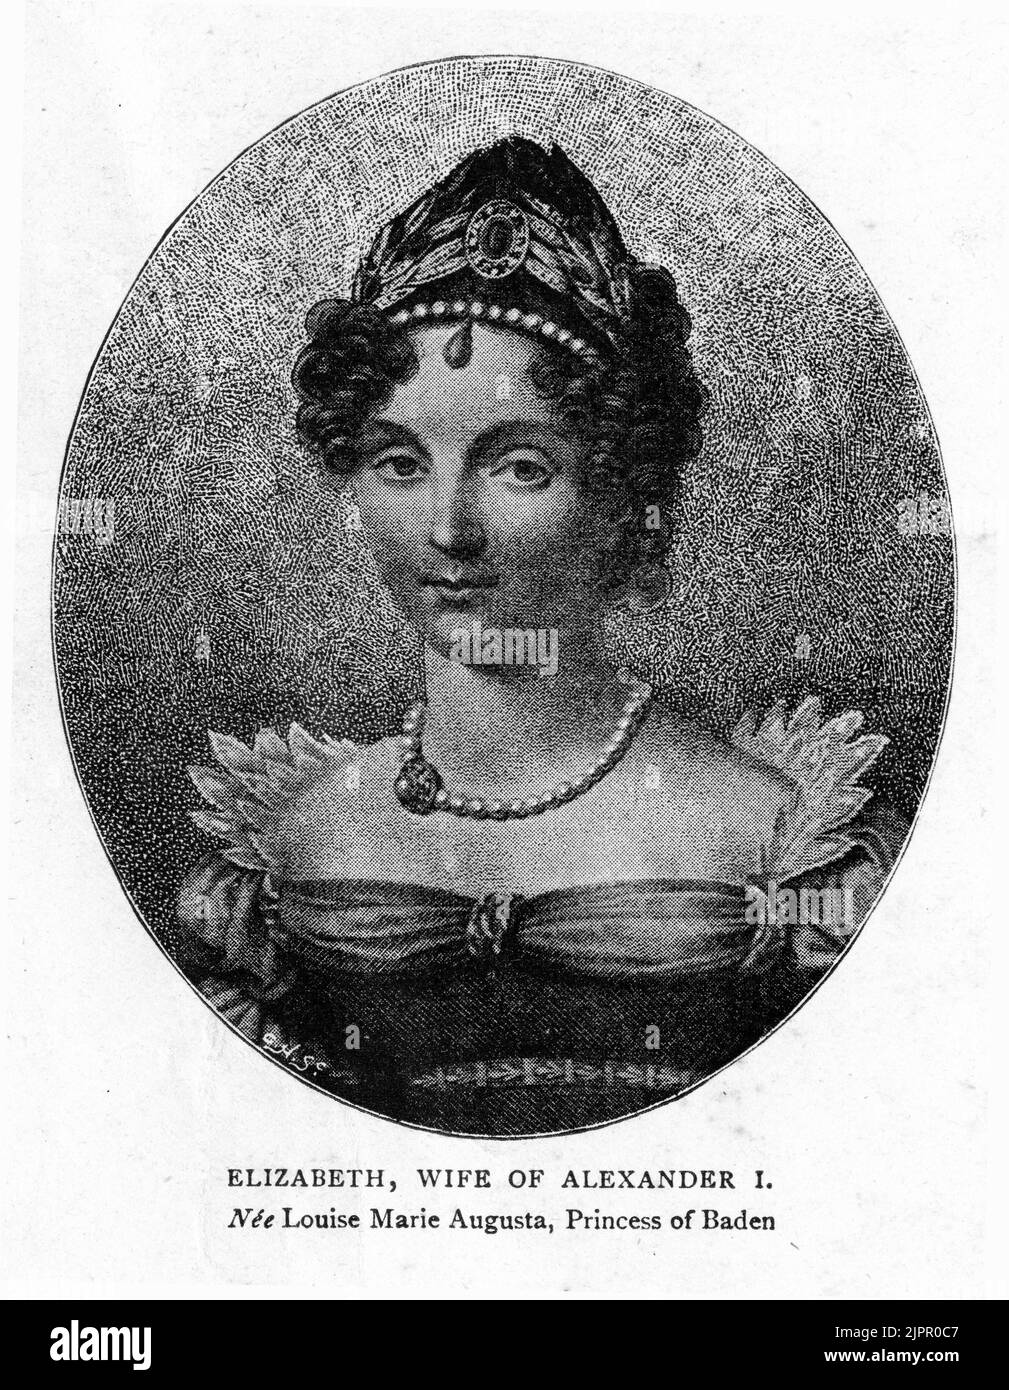 Ritratto inciso della principessa Louise di Baden (1779 – 1826) più tardi noto come Elisabetta Alexeievna, imperatrice di Russia durante il suo matrimonio con l'imperatore Alessandro I. Foto Stock